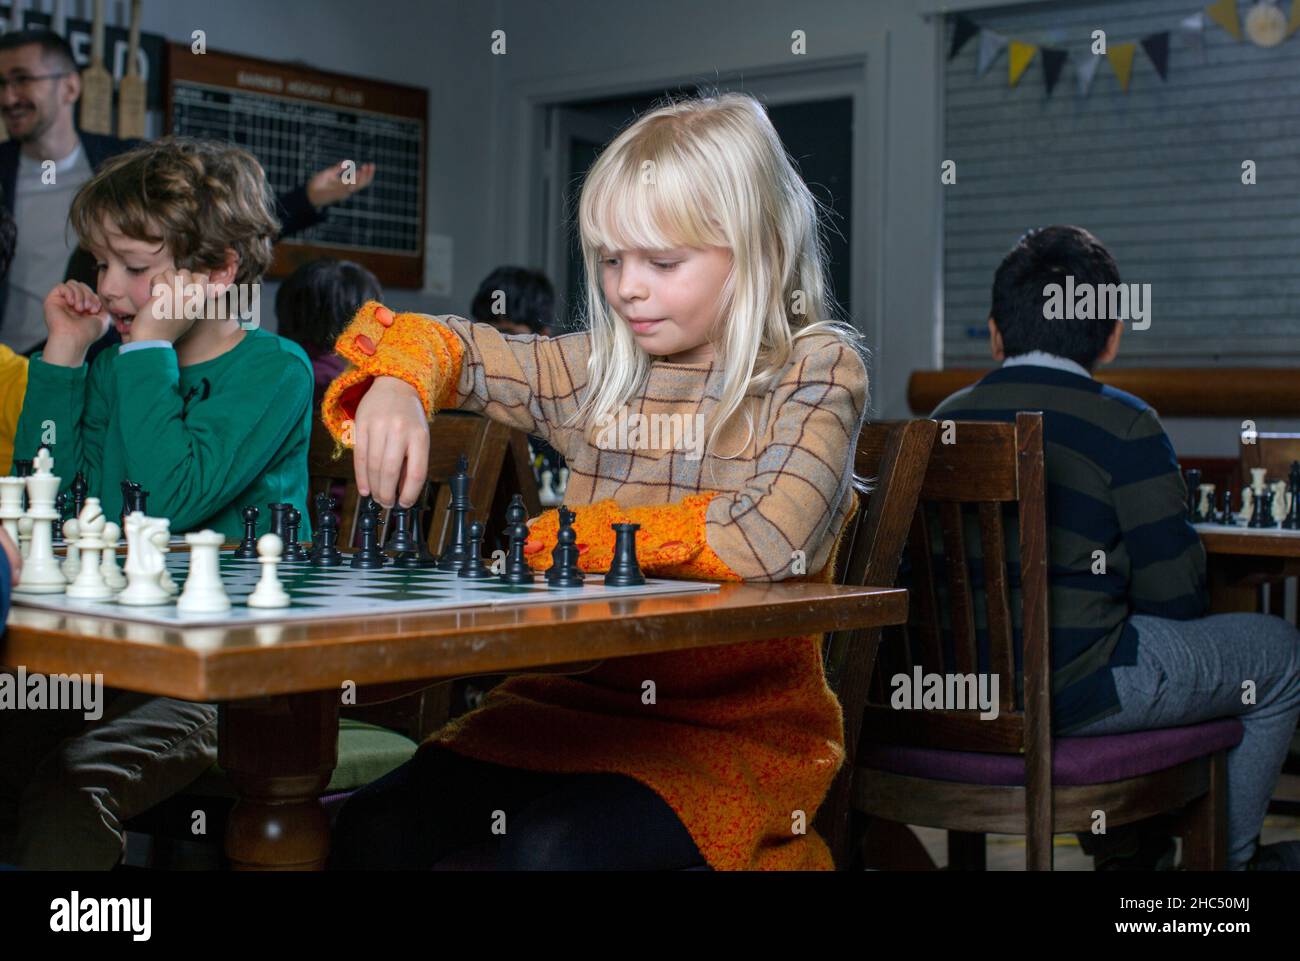 Giochi intelligenti. Un bambino gioca a scacchi, una ragazza e una scacchiera. Strategia. Pensiero logico. La bambina gioca a scacchi Foto Stock